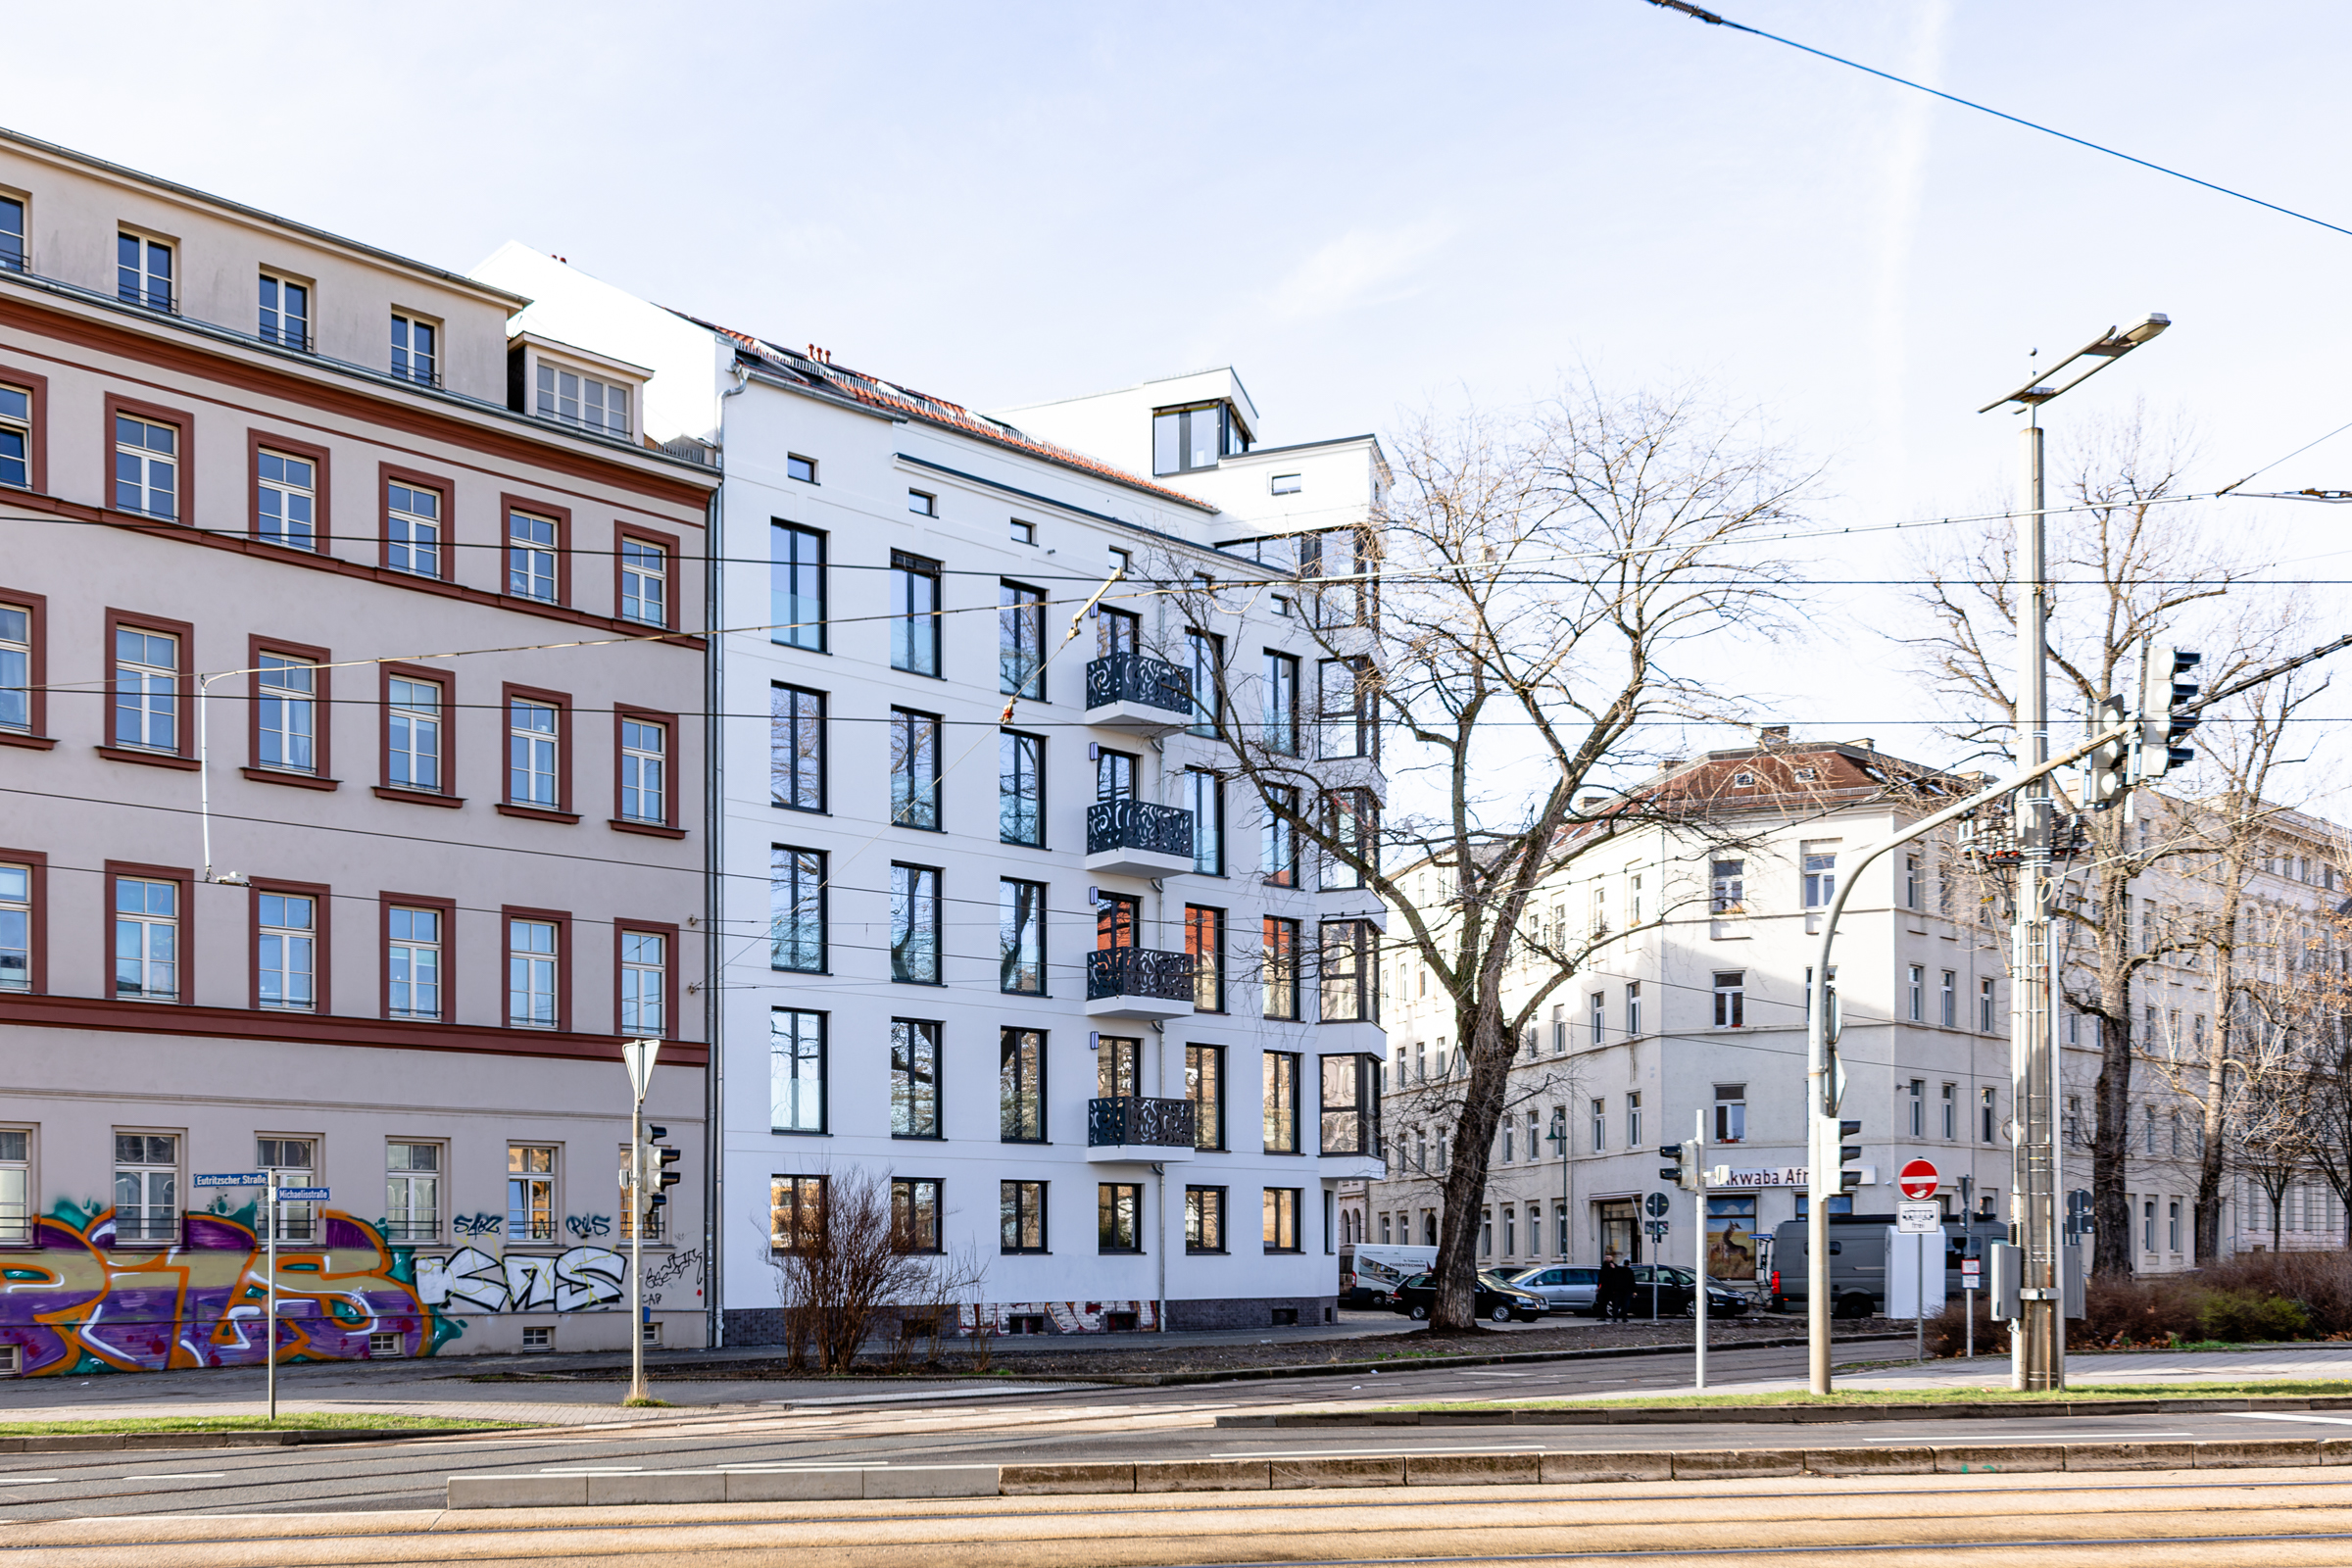   Schutz von Wohnraum in Leipzig | Leipzig wächst, bezahlbarer Wohnraum ist knapp. Kann ein neues Gesetz Abhilfe schaffen?  